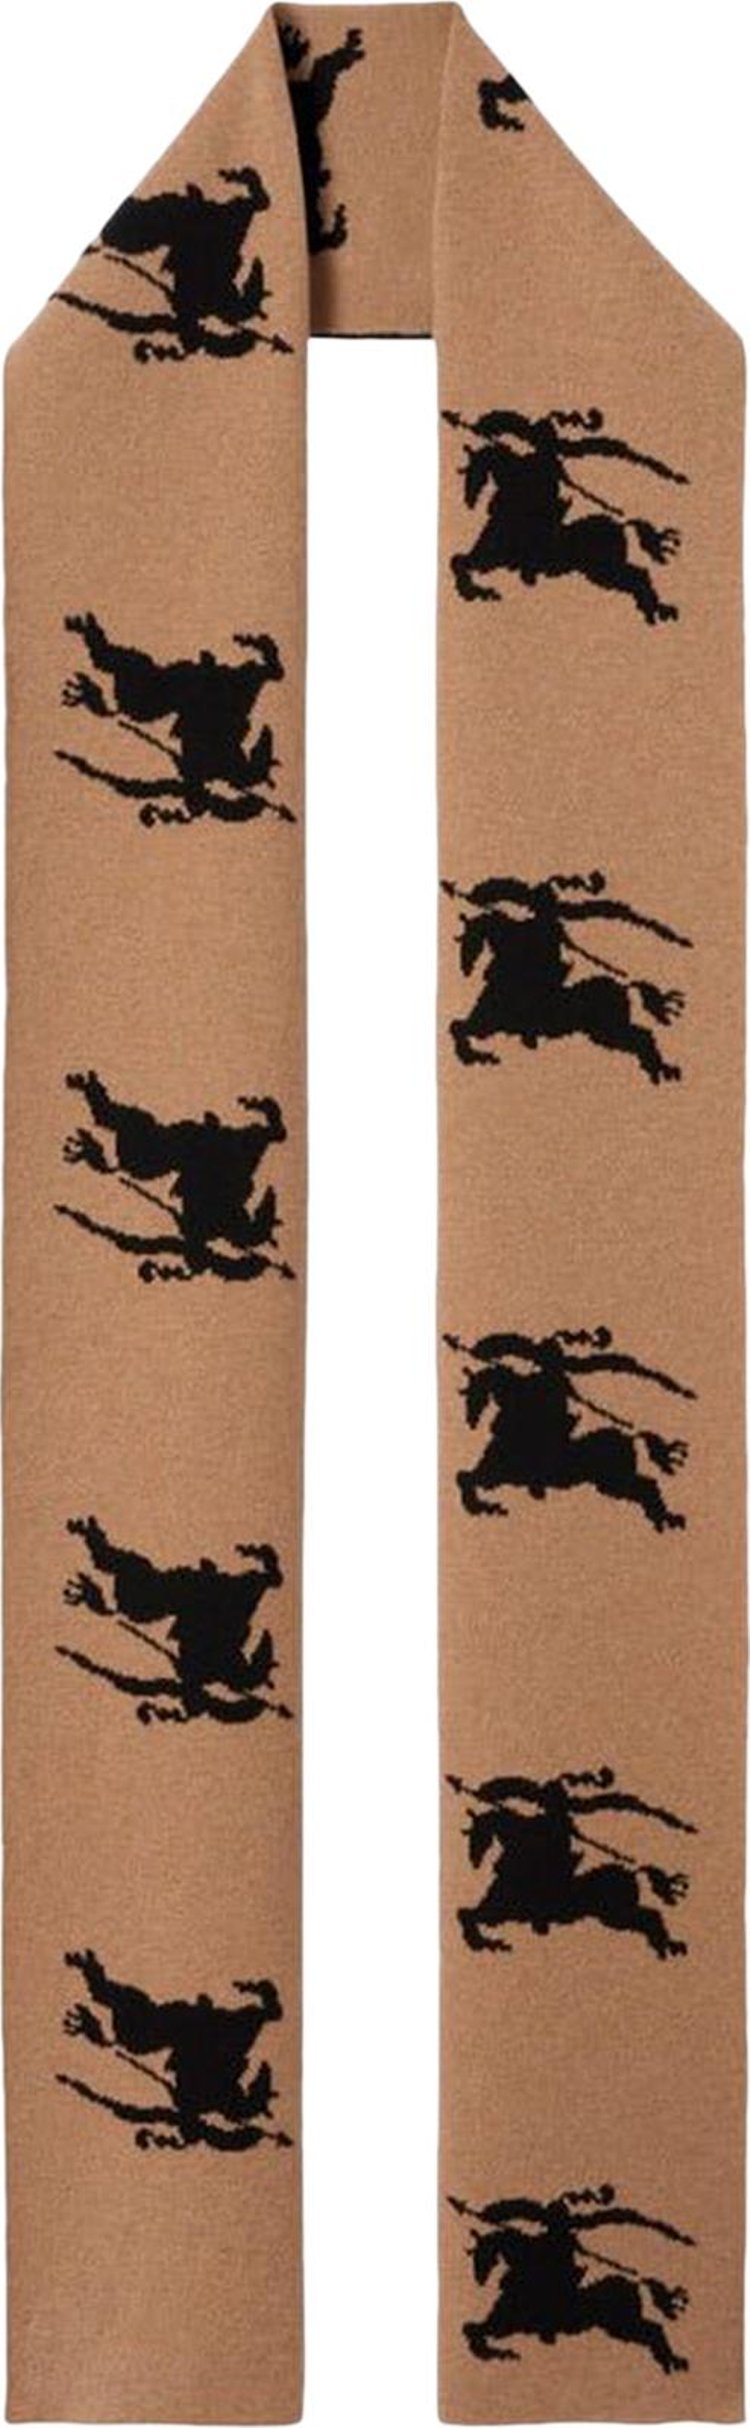 Burberry Equestrian Wool Scarf 'Camel'